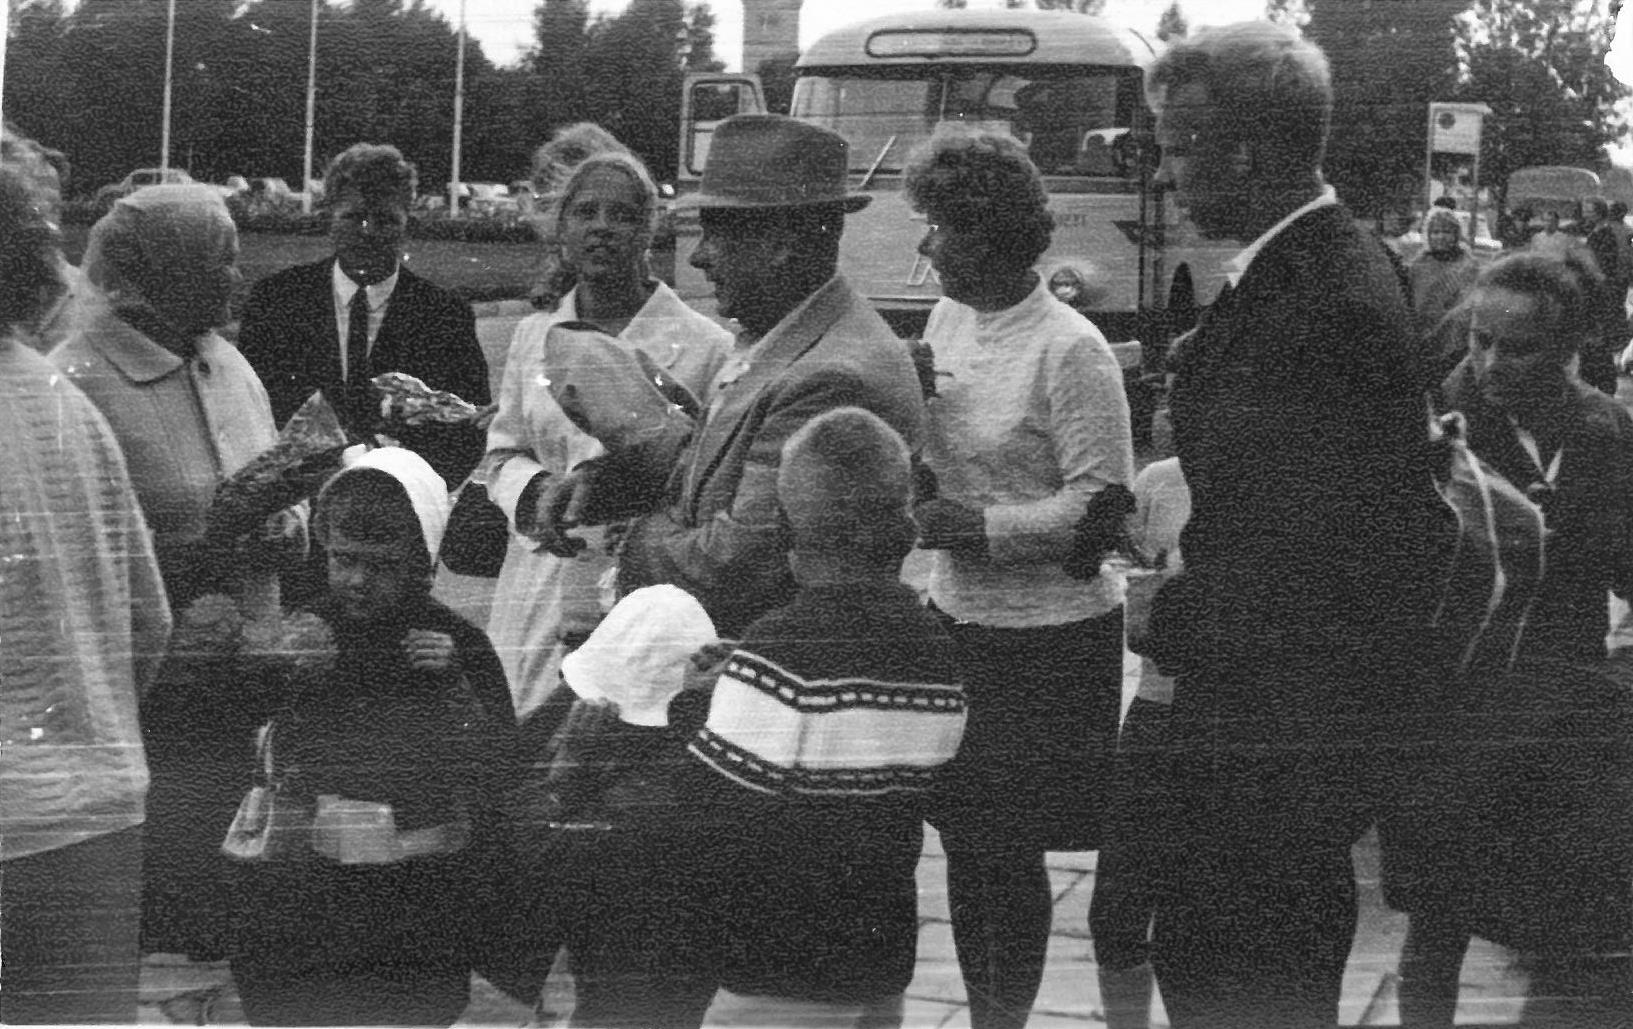 Pirmasis Kazio Balčiūno vizitas Lietuvoje. 1972 m. Savo artimuosius K. Balčiūnas vėl išvydo po 28 nesimatymo metų